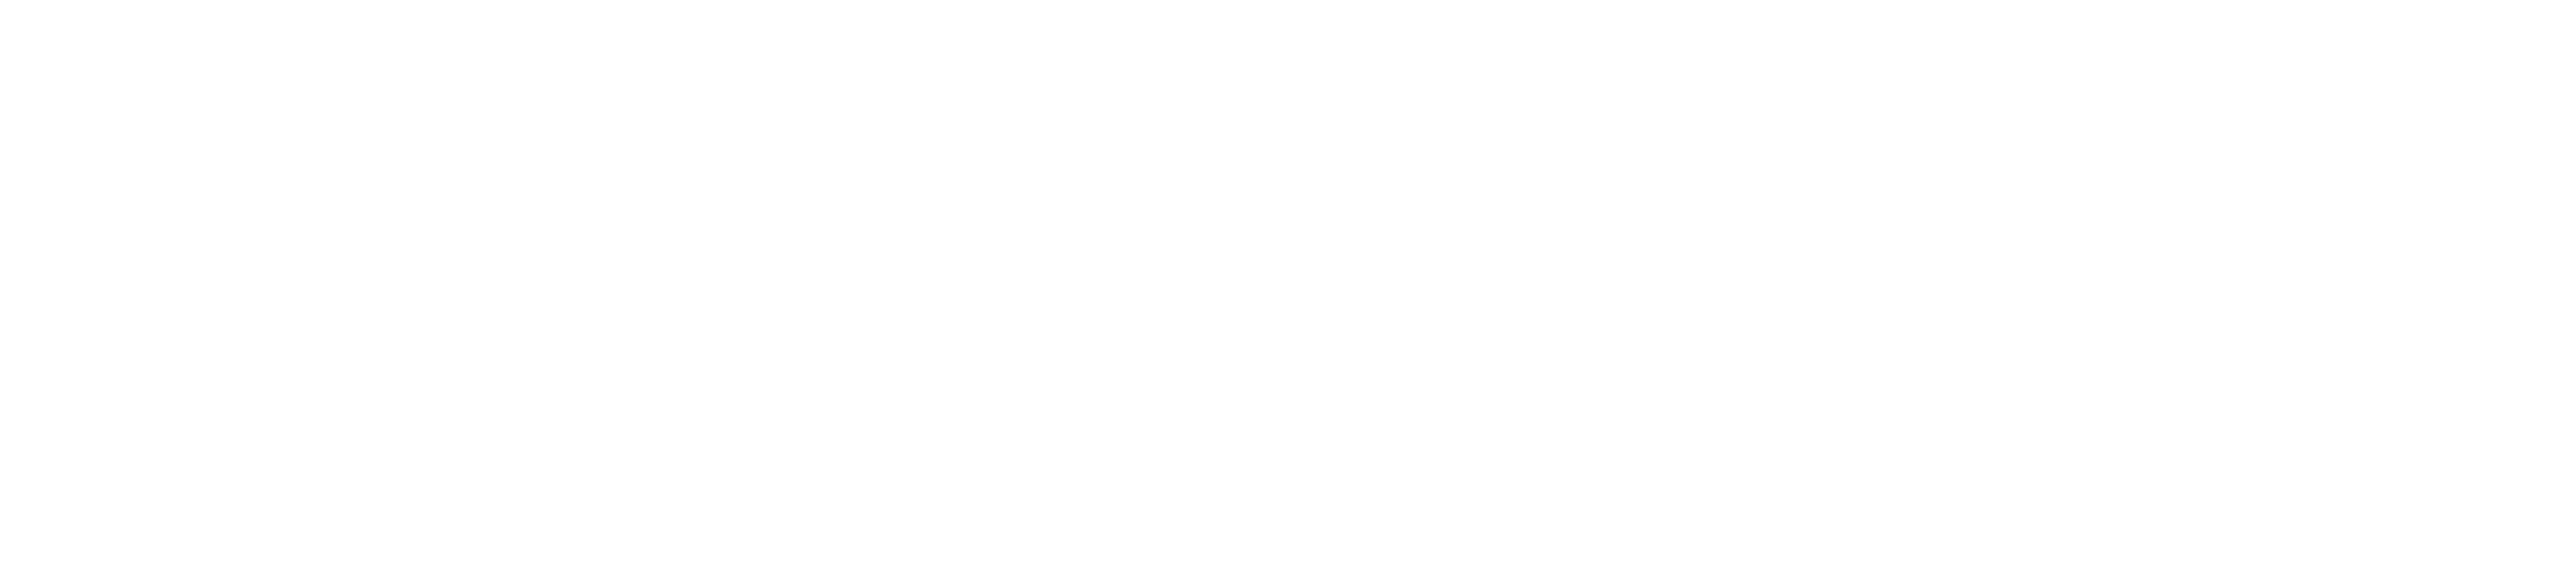 Injetfour